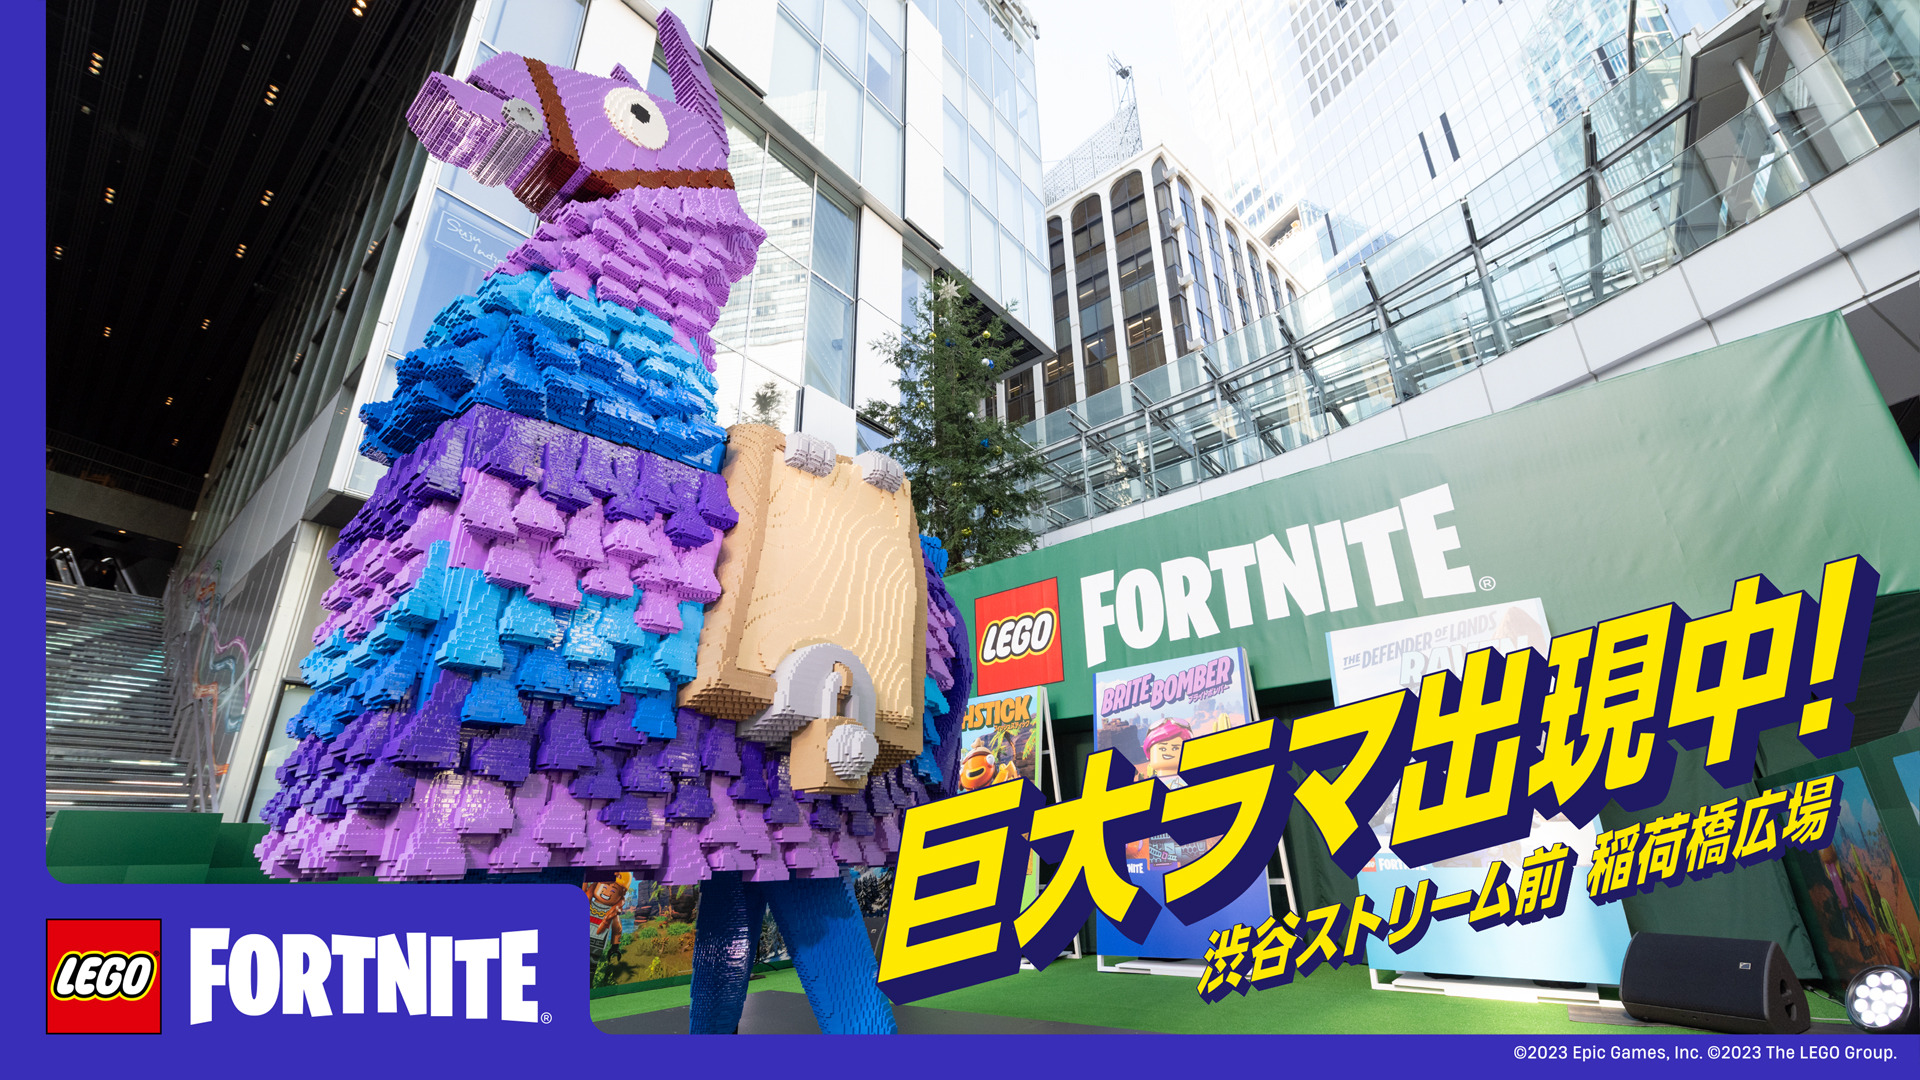 【大盛況】渋谷ストリーム前で行われているレゴラマ作り体験ができるワークショップがたった数十分で本日分の受付終了